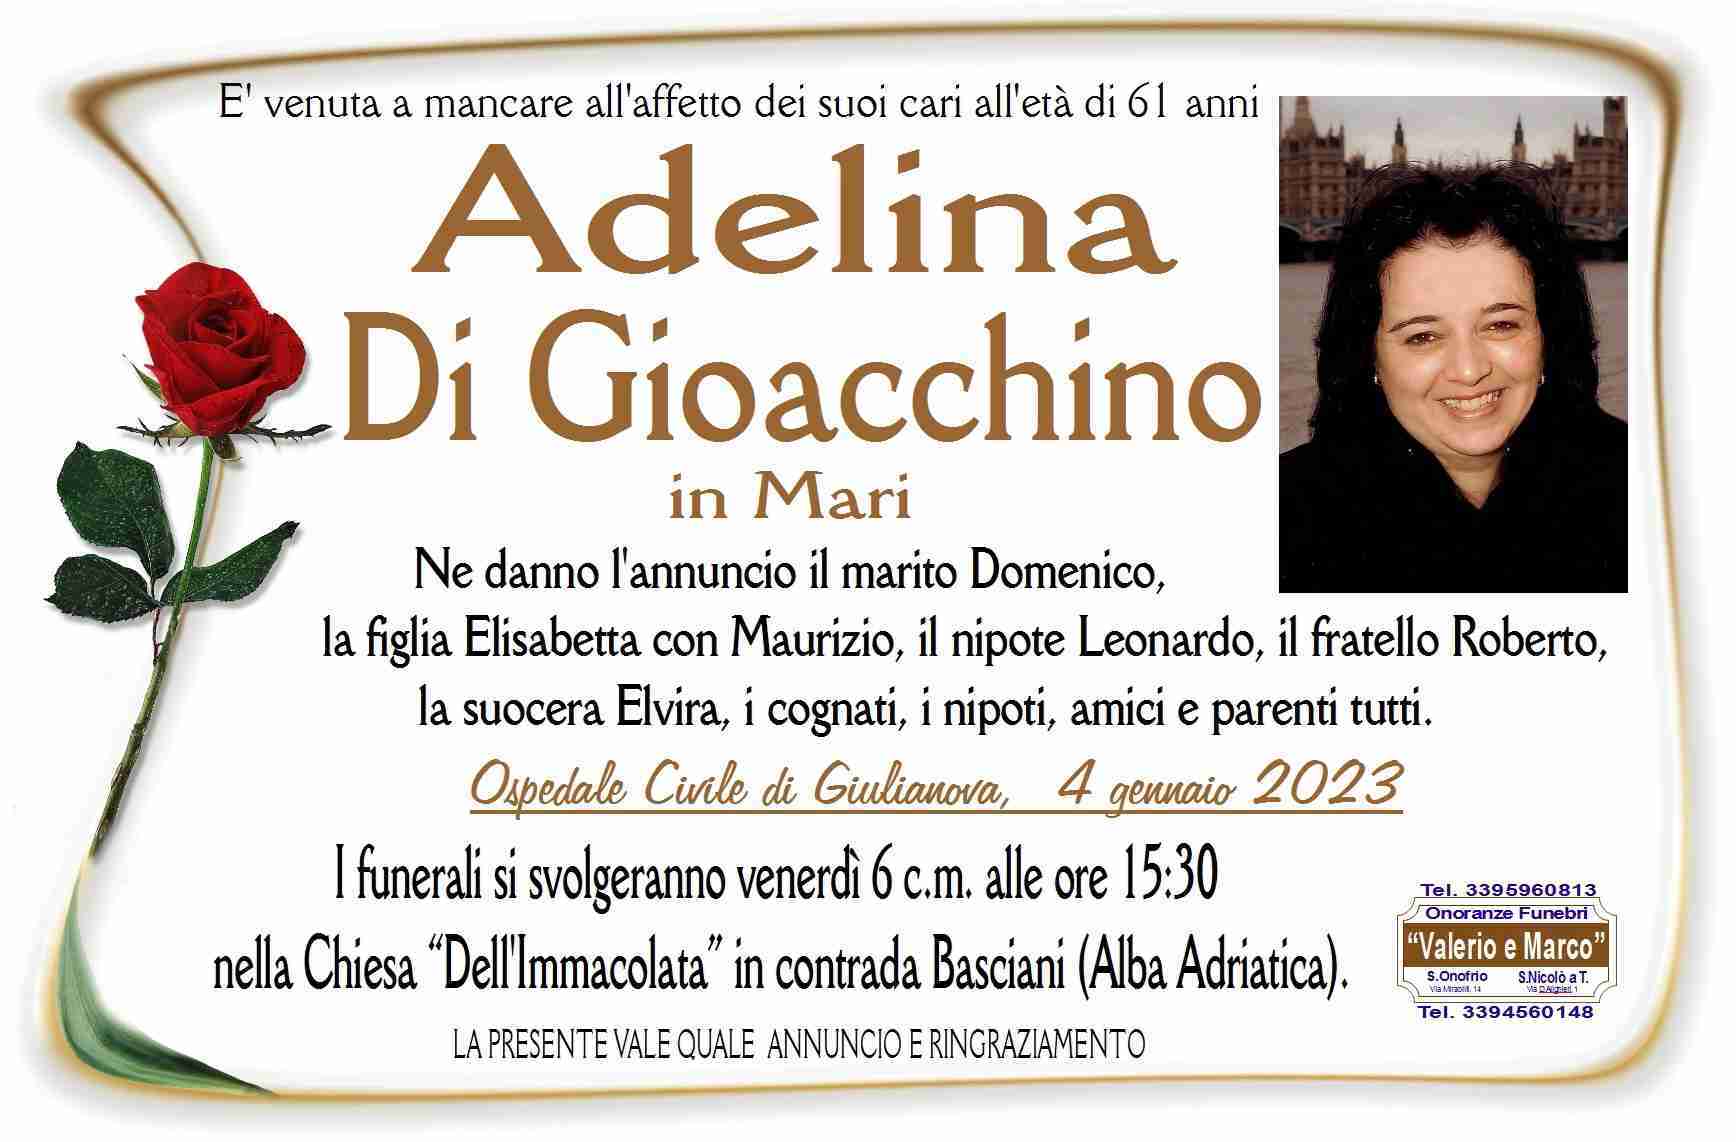 Adelina Di Gioacchino